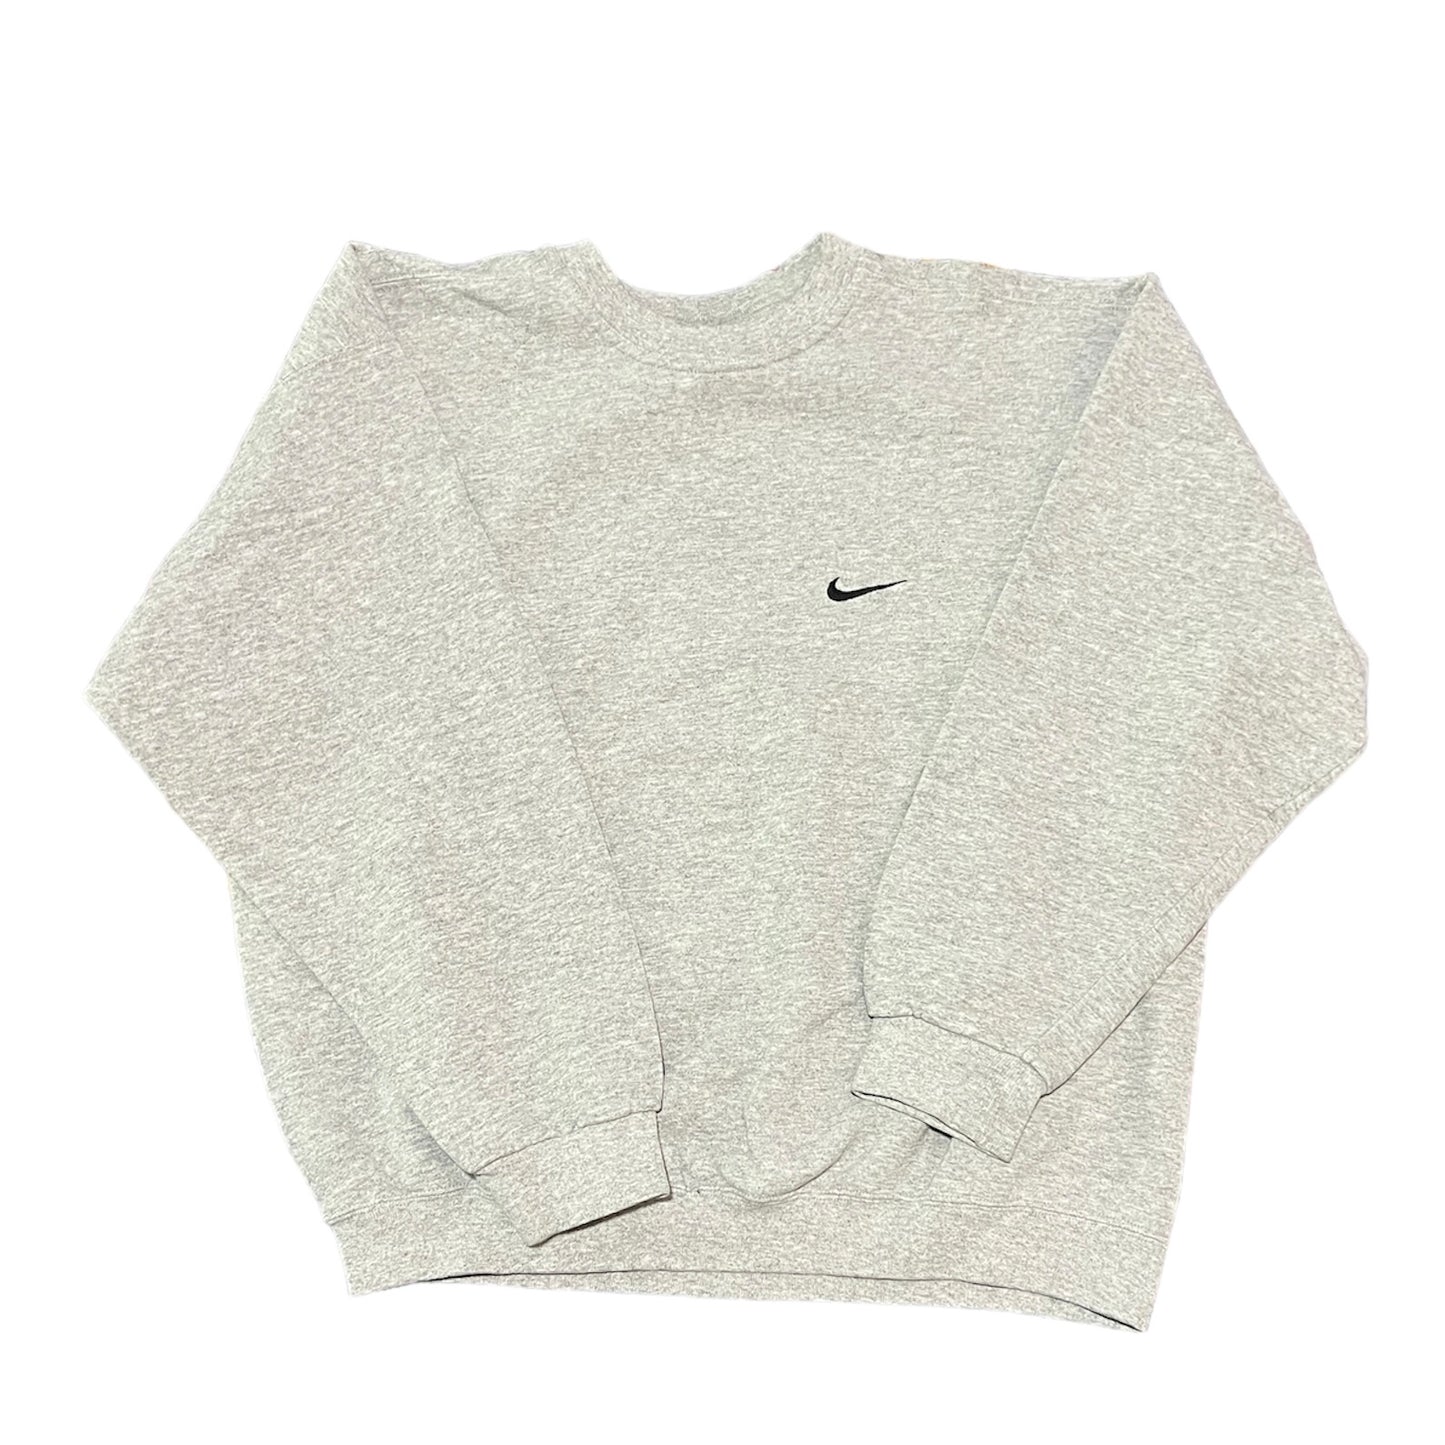 Nike Sweatshirt Size Large